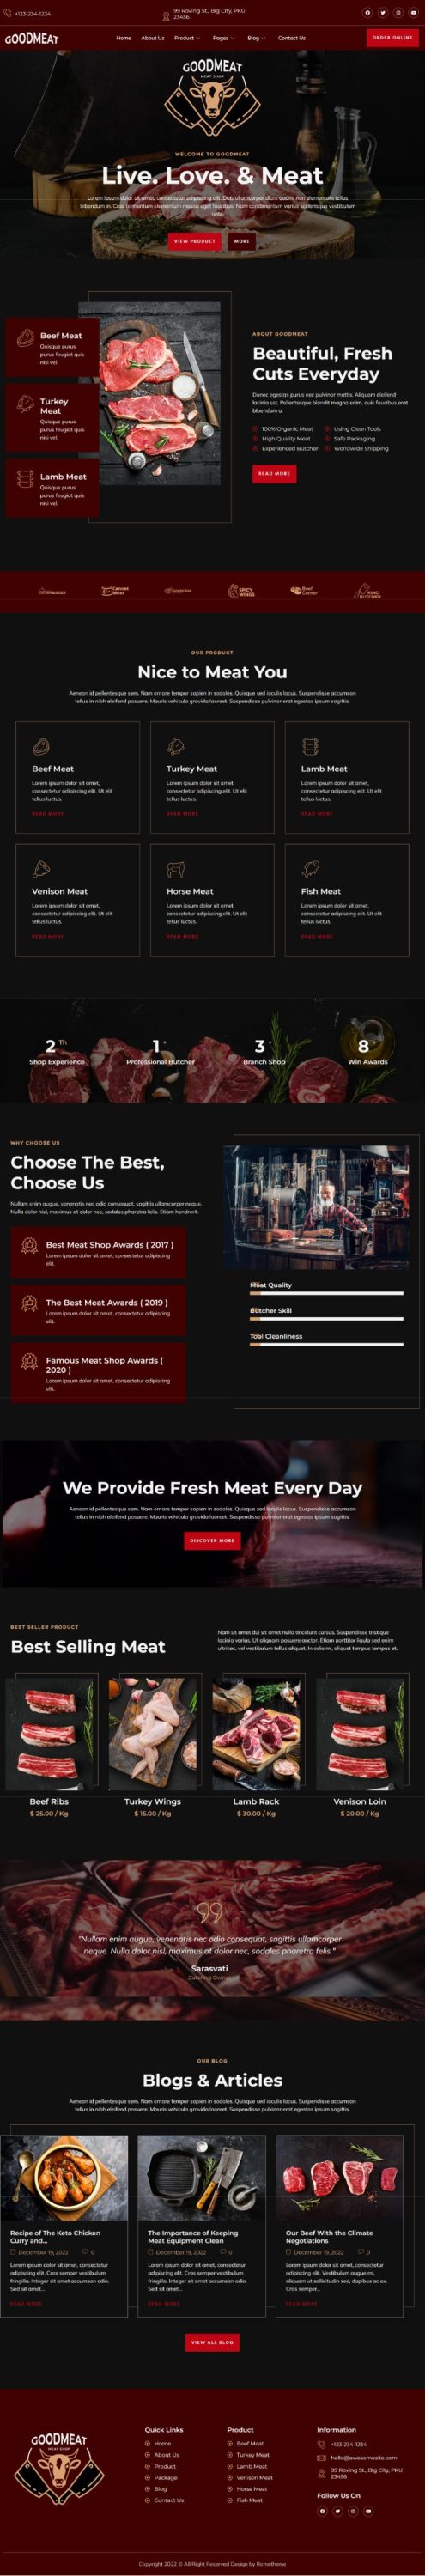 Mẫu website bán hàng sản phẩm nông nghiệp - Goodmeat